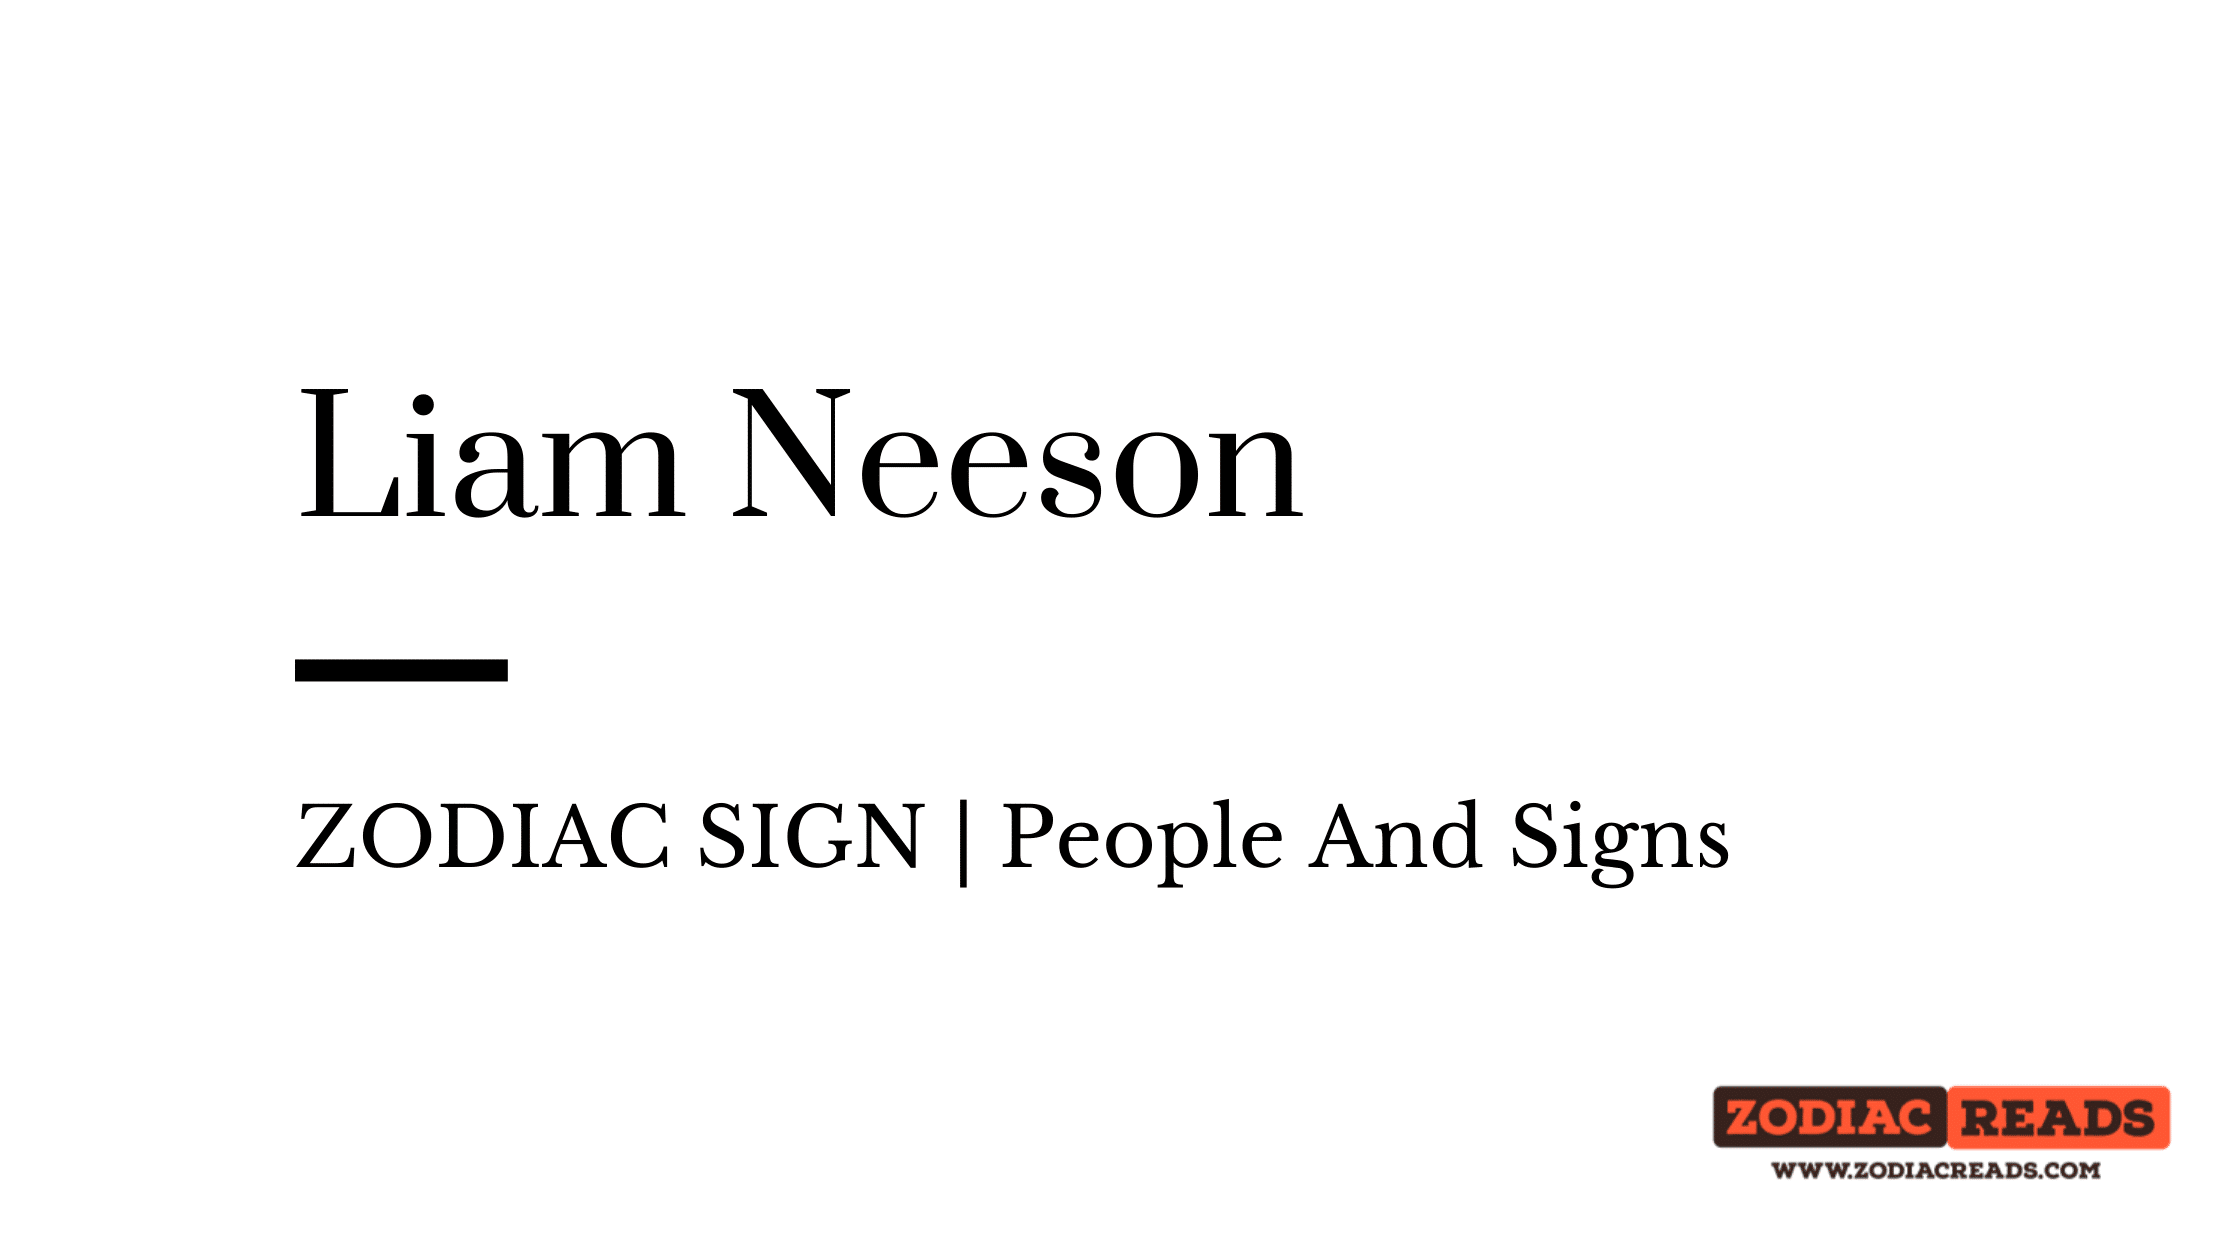 Liam Neeson zodiac